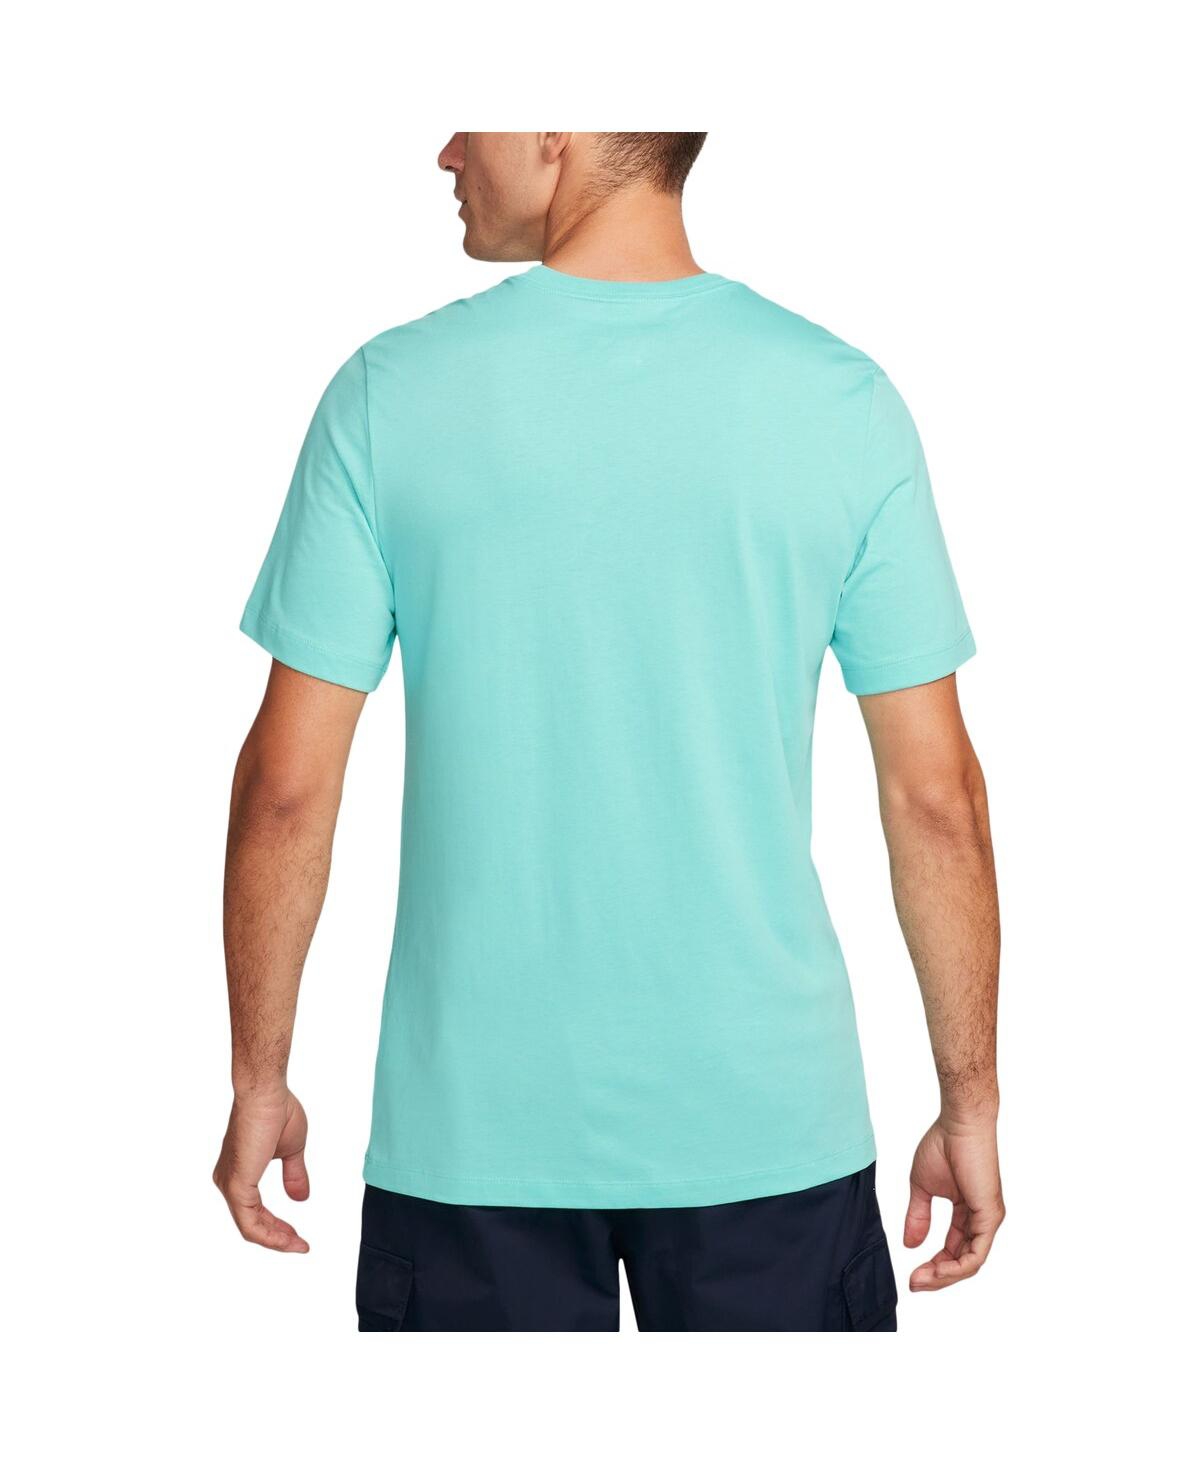 Shop Nike Men's  Aqua Barcelona Air Max 90 T-shirt